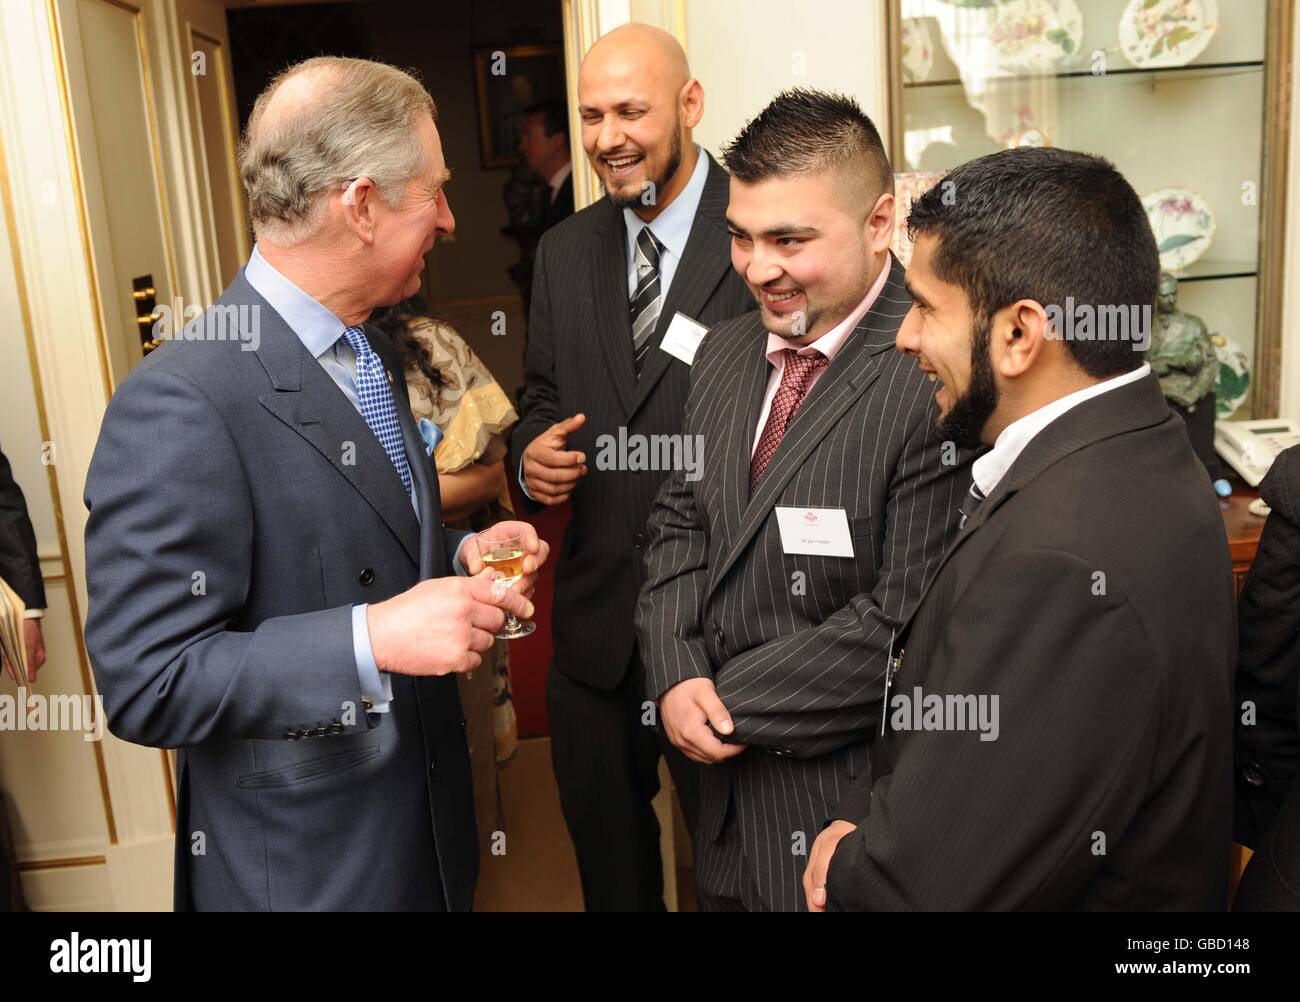 Prince Of Wales Gastgeber Empfang Stockfoto